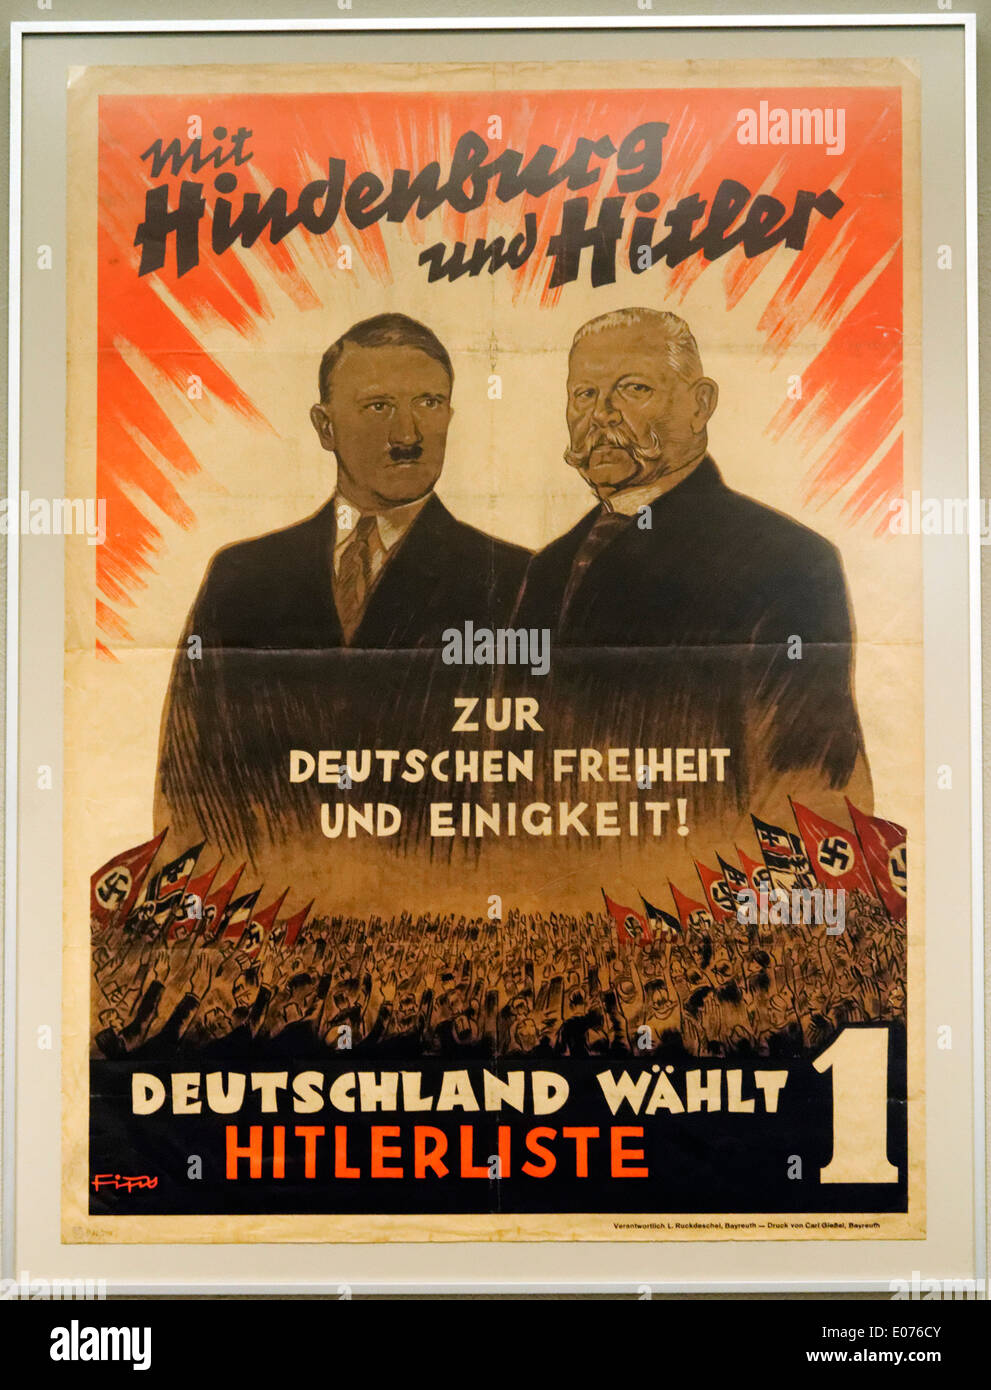 Un nazista cartellone elettorale di Hitler + Hindenburg, con lo slogan "con Hitler e Hindenburg verso il tedesco la libertà e unità' Foto Stock